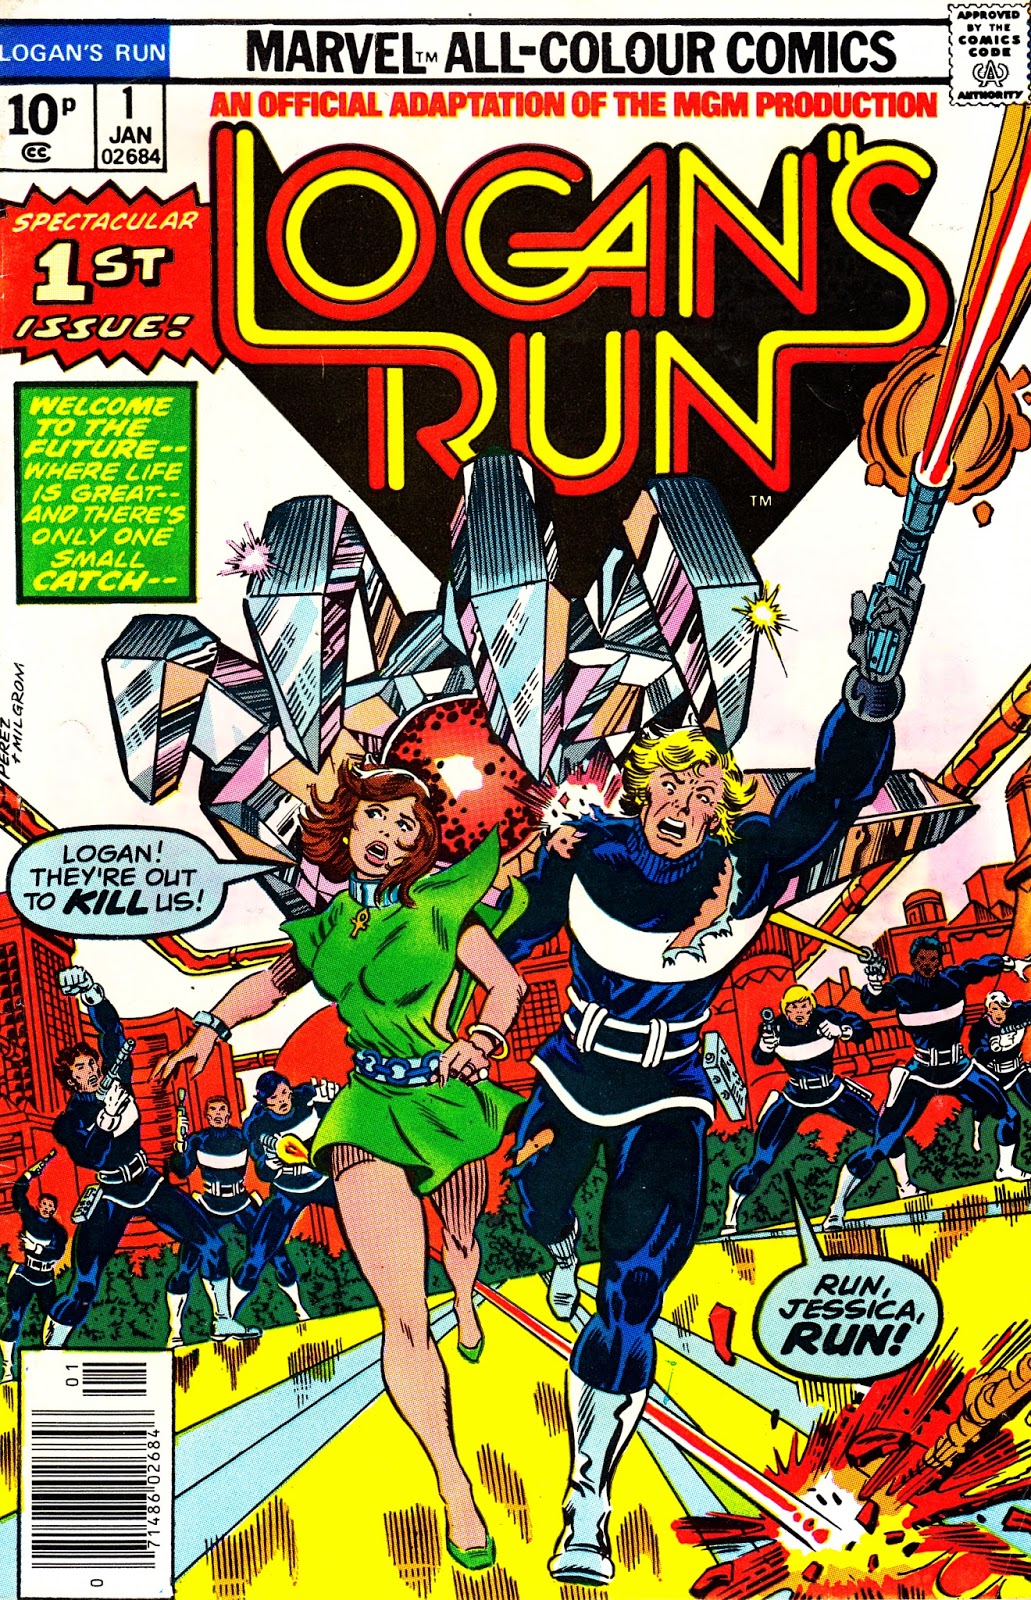 STARLOGGED - GEEK MEDIA AGAIN: 1978: LOGAN'S RUN Issue 1 (Marvel Comics)